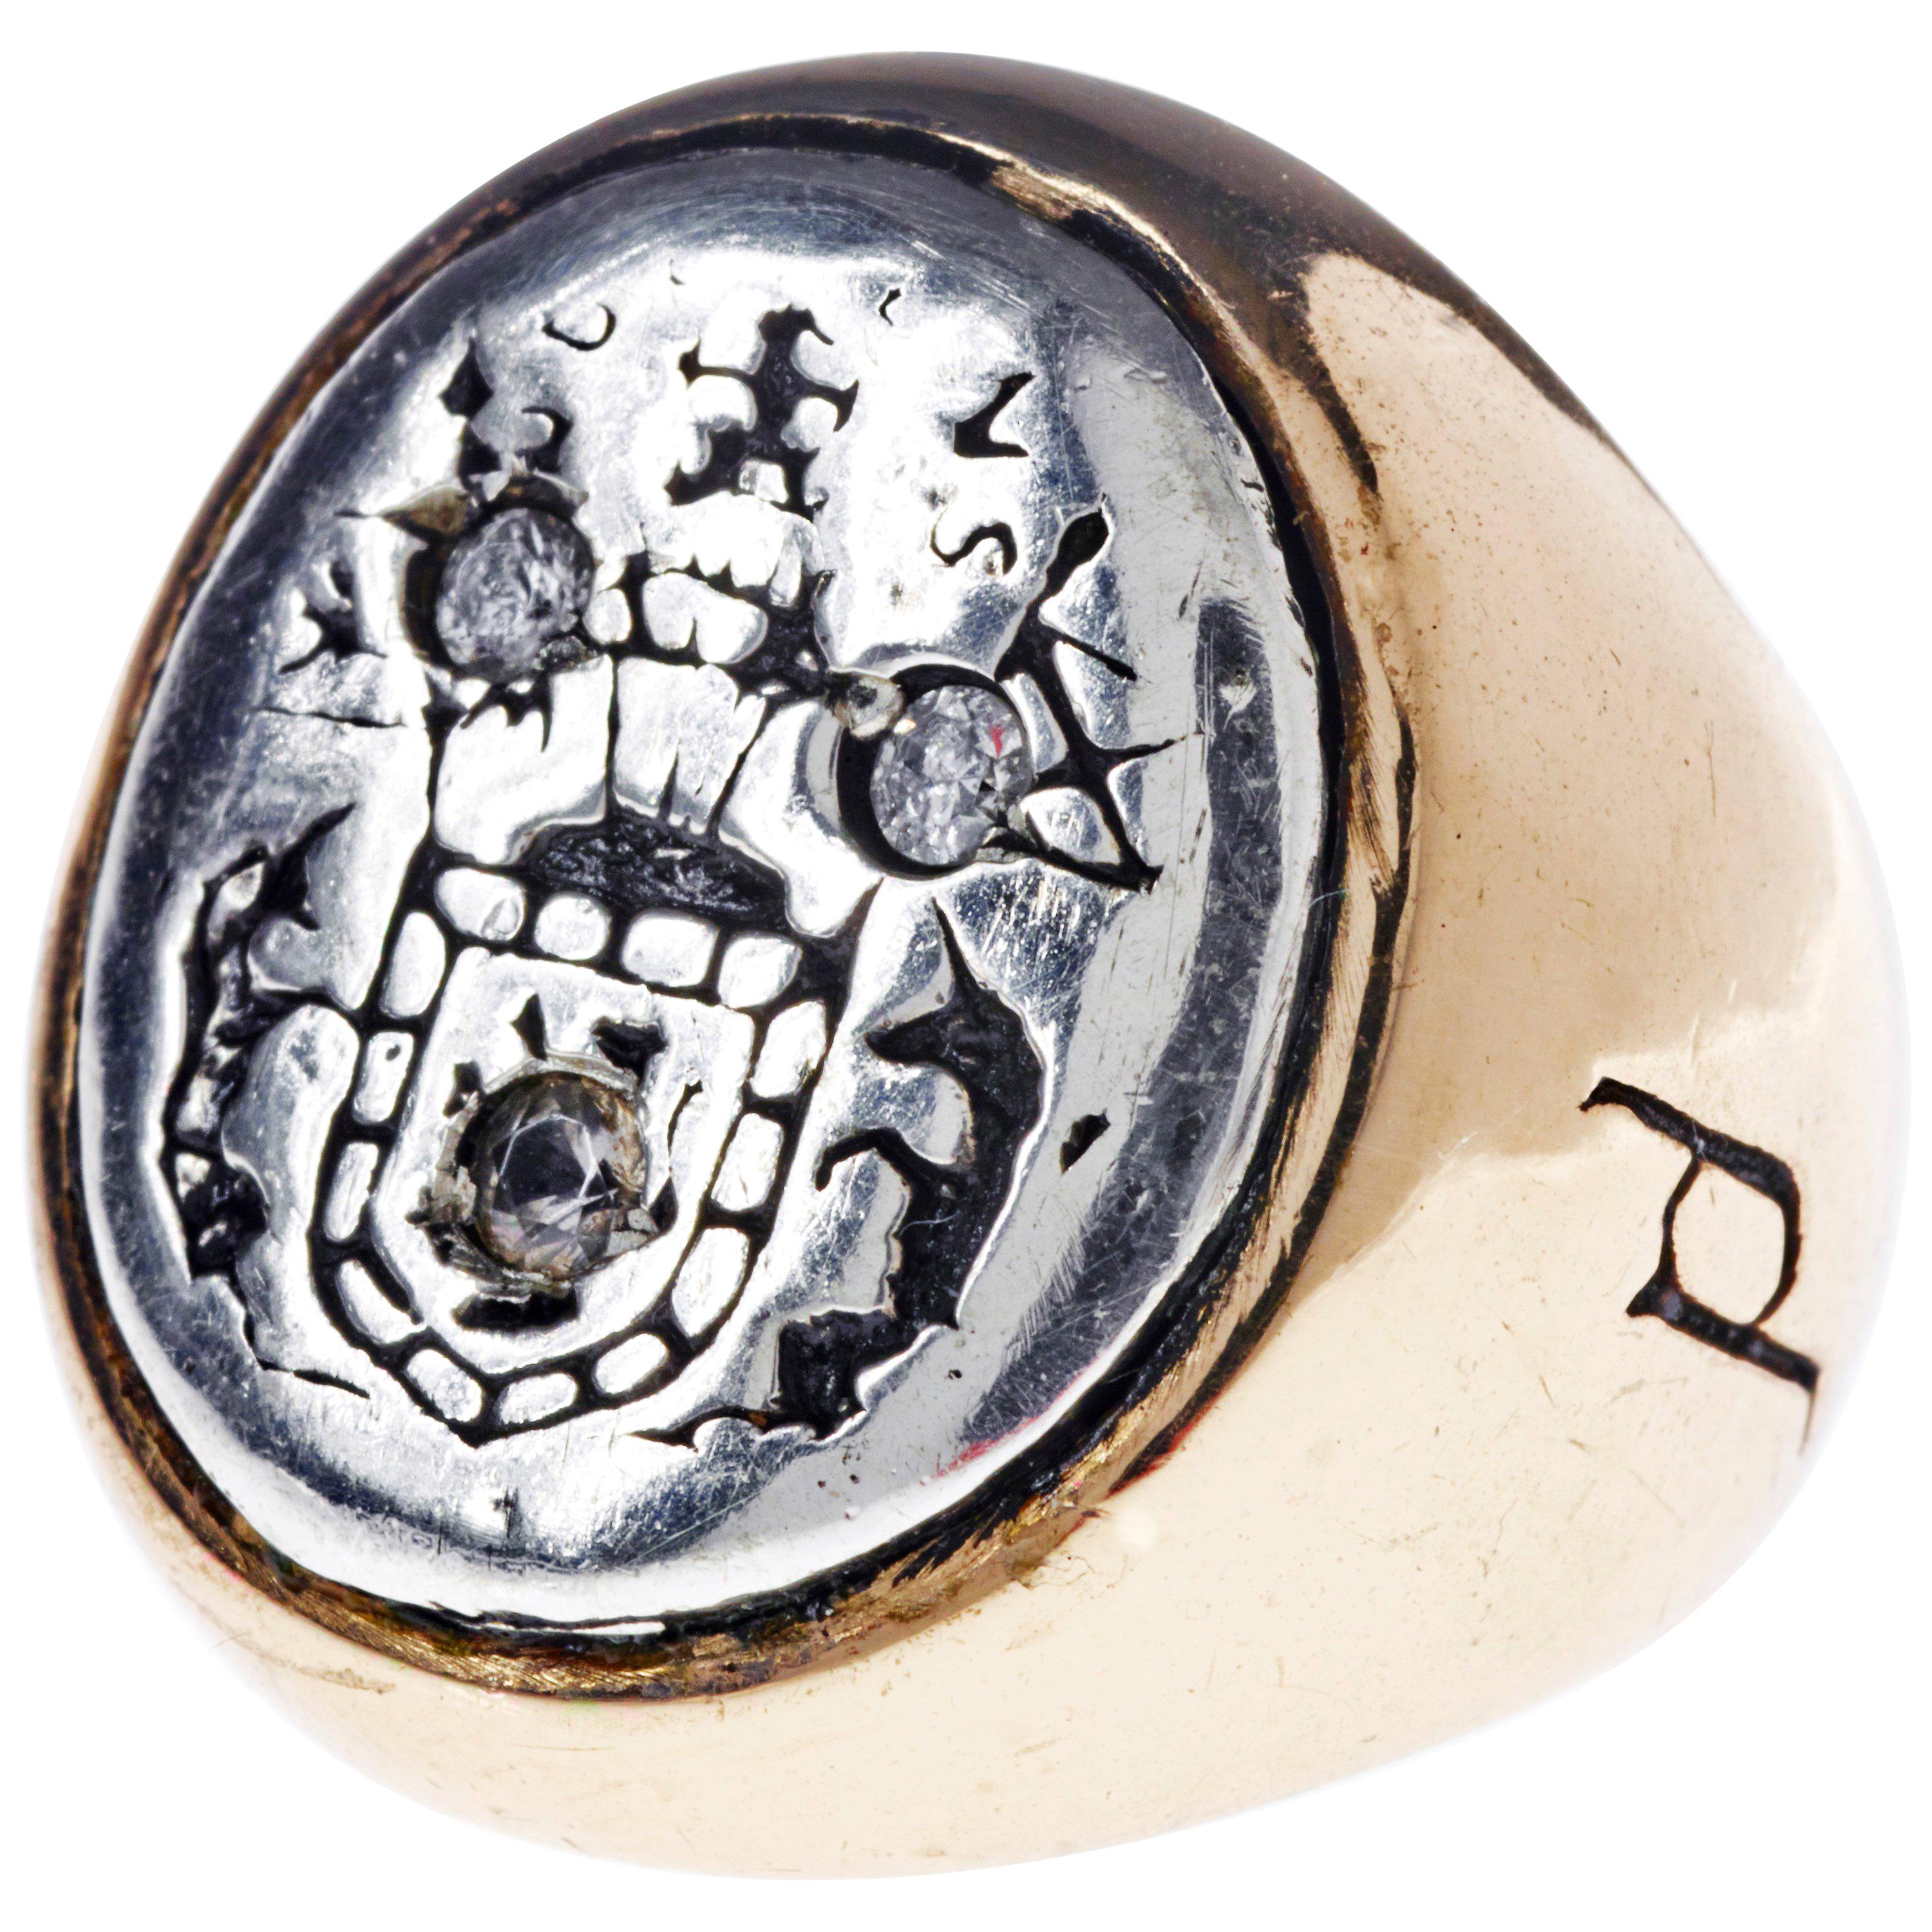 La bague chevalière en diamant blanc Crest Silver Bronze J Dauphin peut être portée par les femmes ou les hommes.

Inspiré de la bague de la reine Marie d'Écosse. Bague sigillaire en or ; gravée ; épaules ornées de fleurs et de feuilles. Lunette